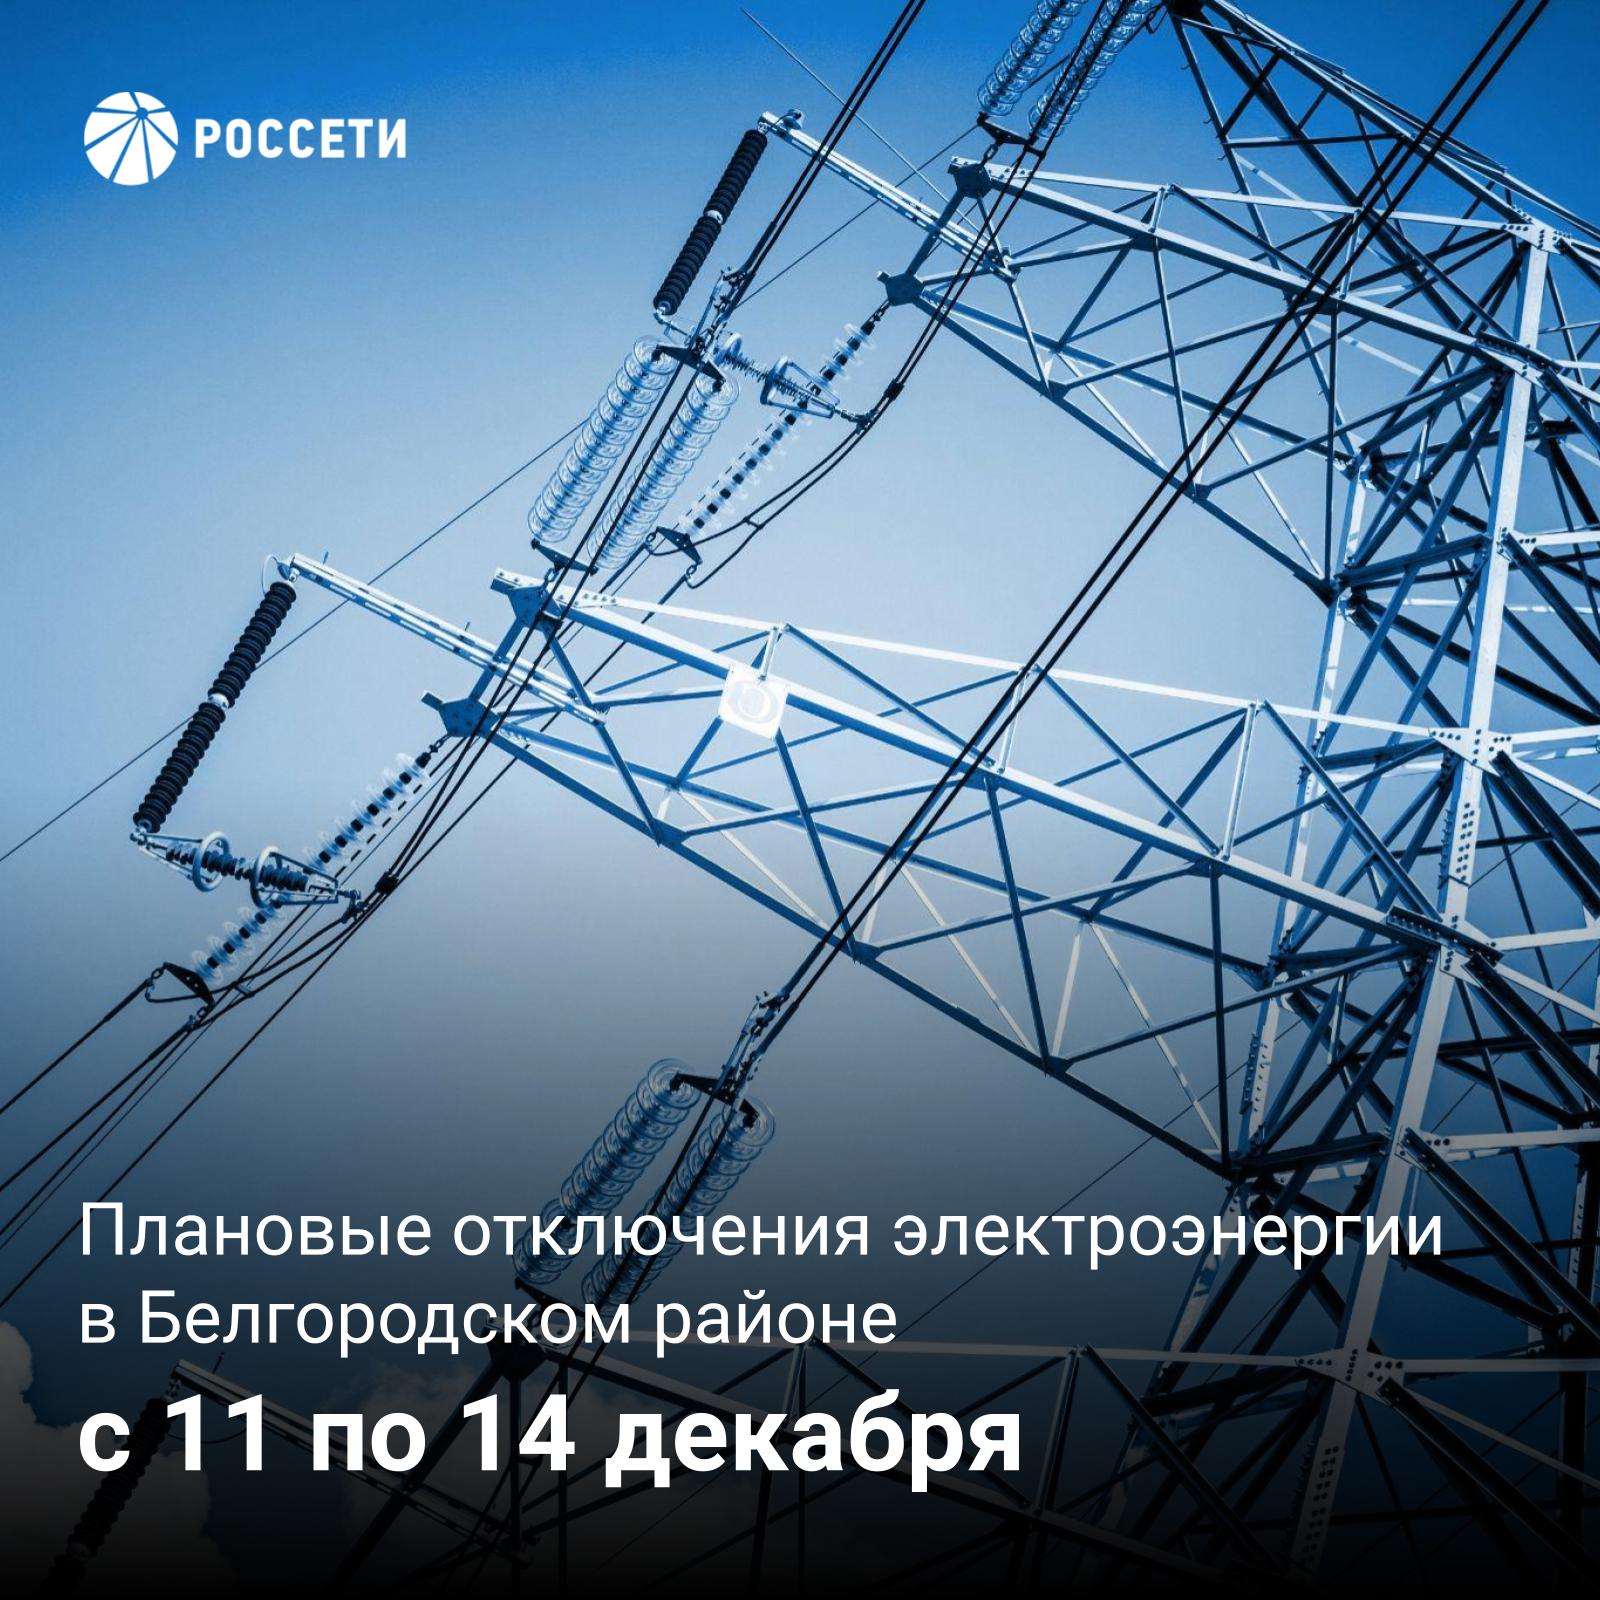 График отключения электроэнергии в поселениях Белгородского района, которые пройдут с 11 по 14 декабря.